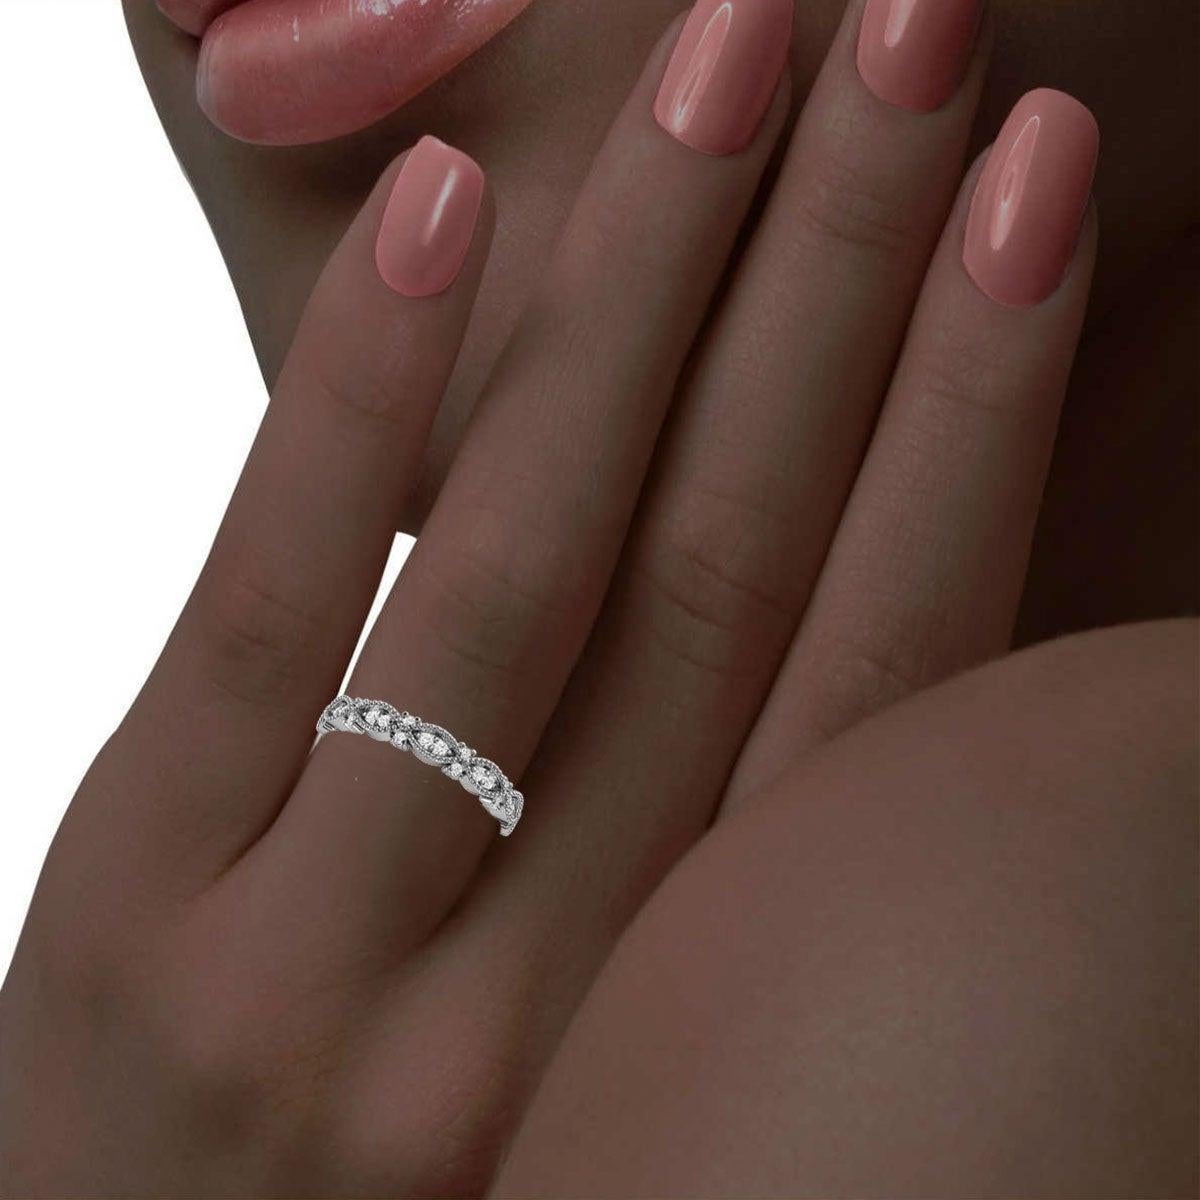 For Sale:  14k White Gold Valence Milgrain Diamond Ring '1/5 Ct. tw' 4